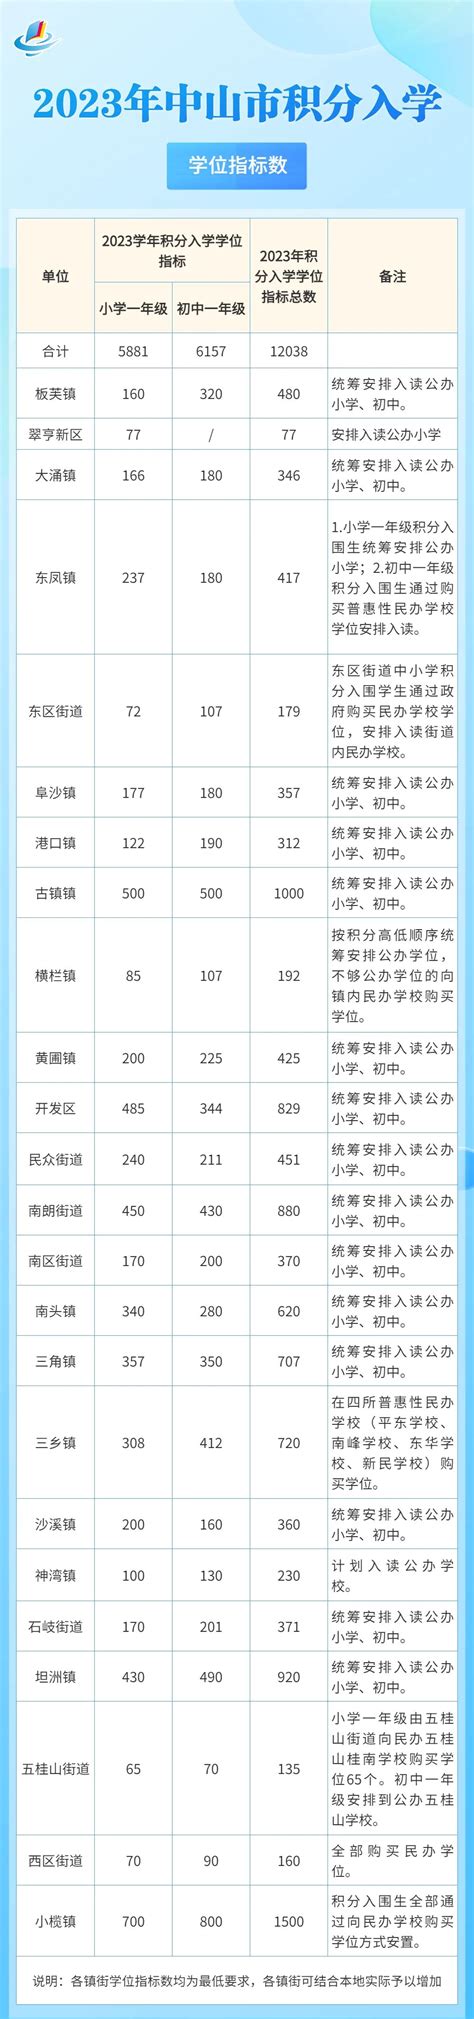 中山市2023年度流动人员积分入学入围名单公示-文教频道 - 中山网